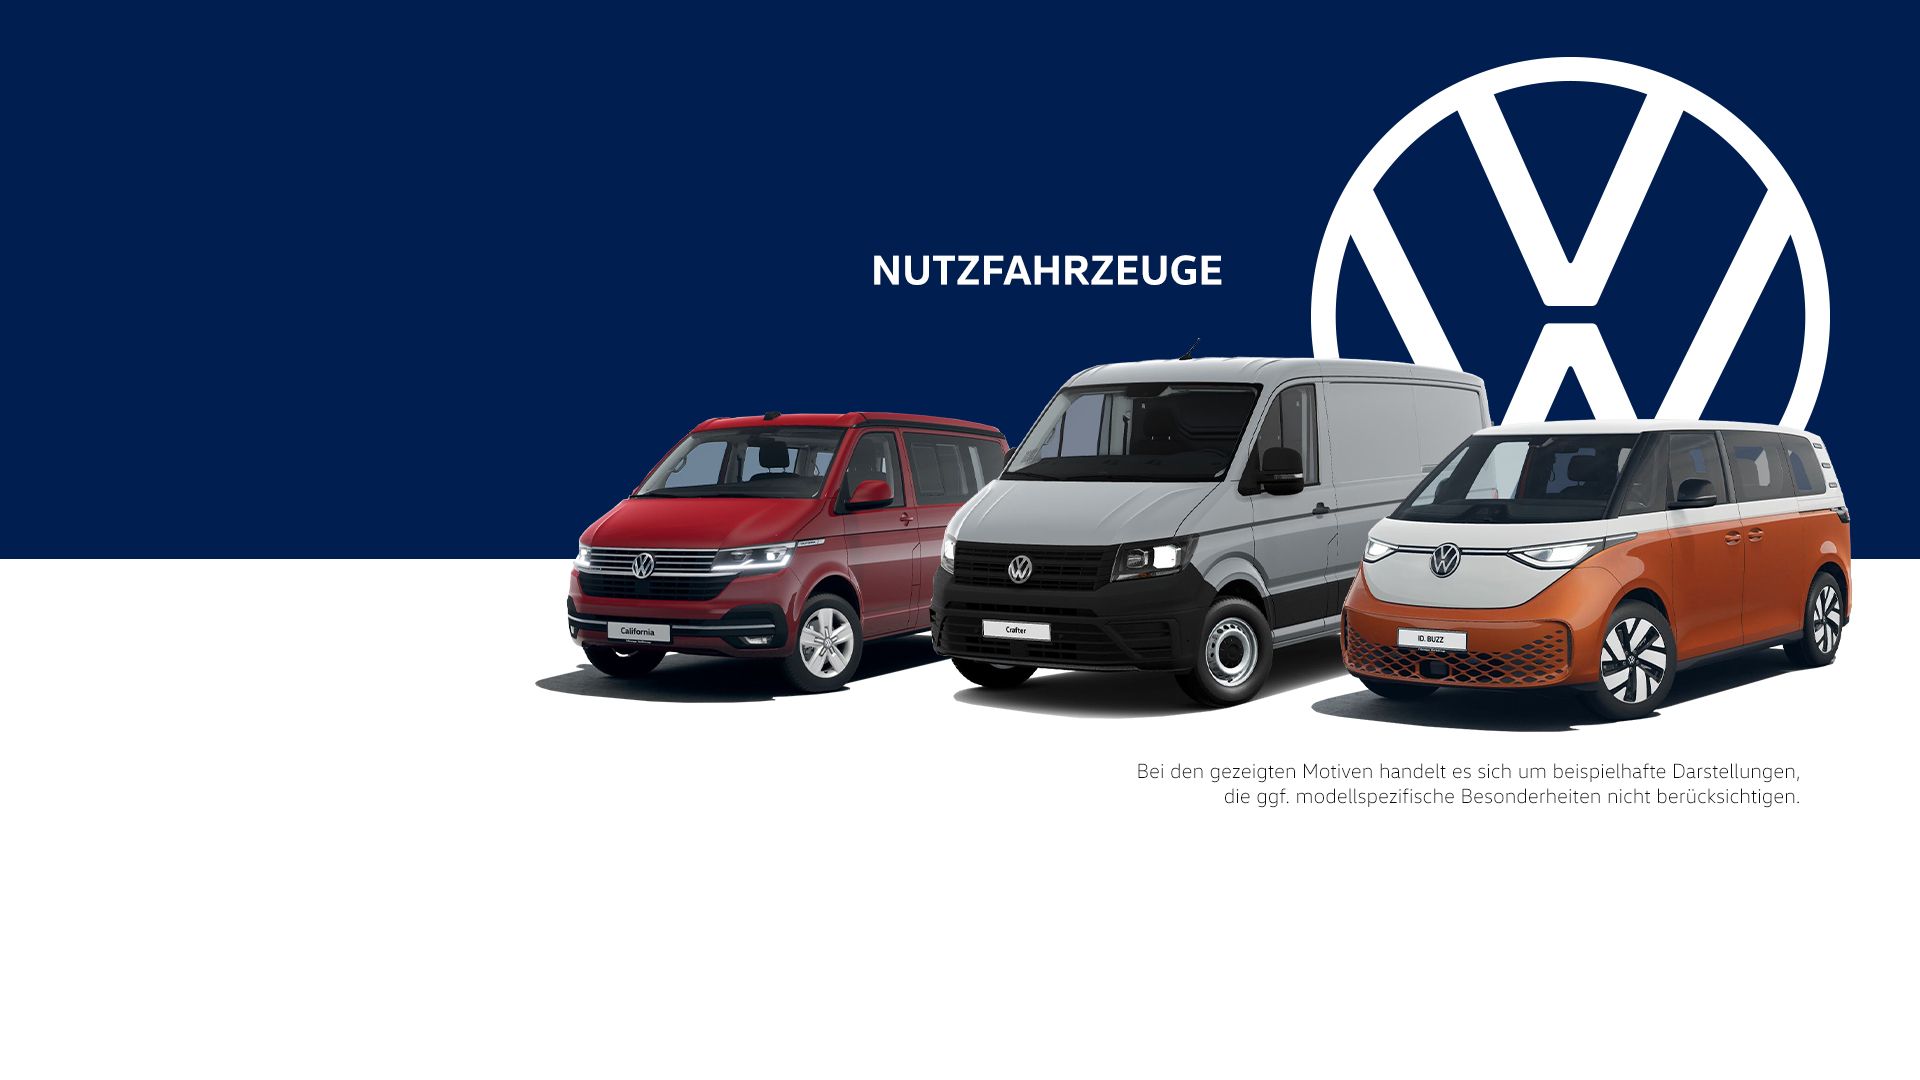 beispielhafte Darstellung 3 unterschiedlicher Nutzfahrzeuge von VW